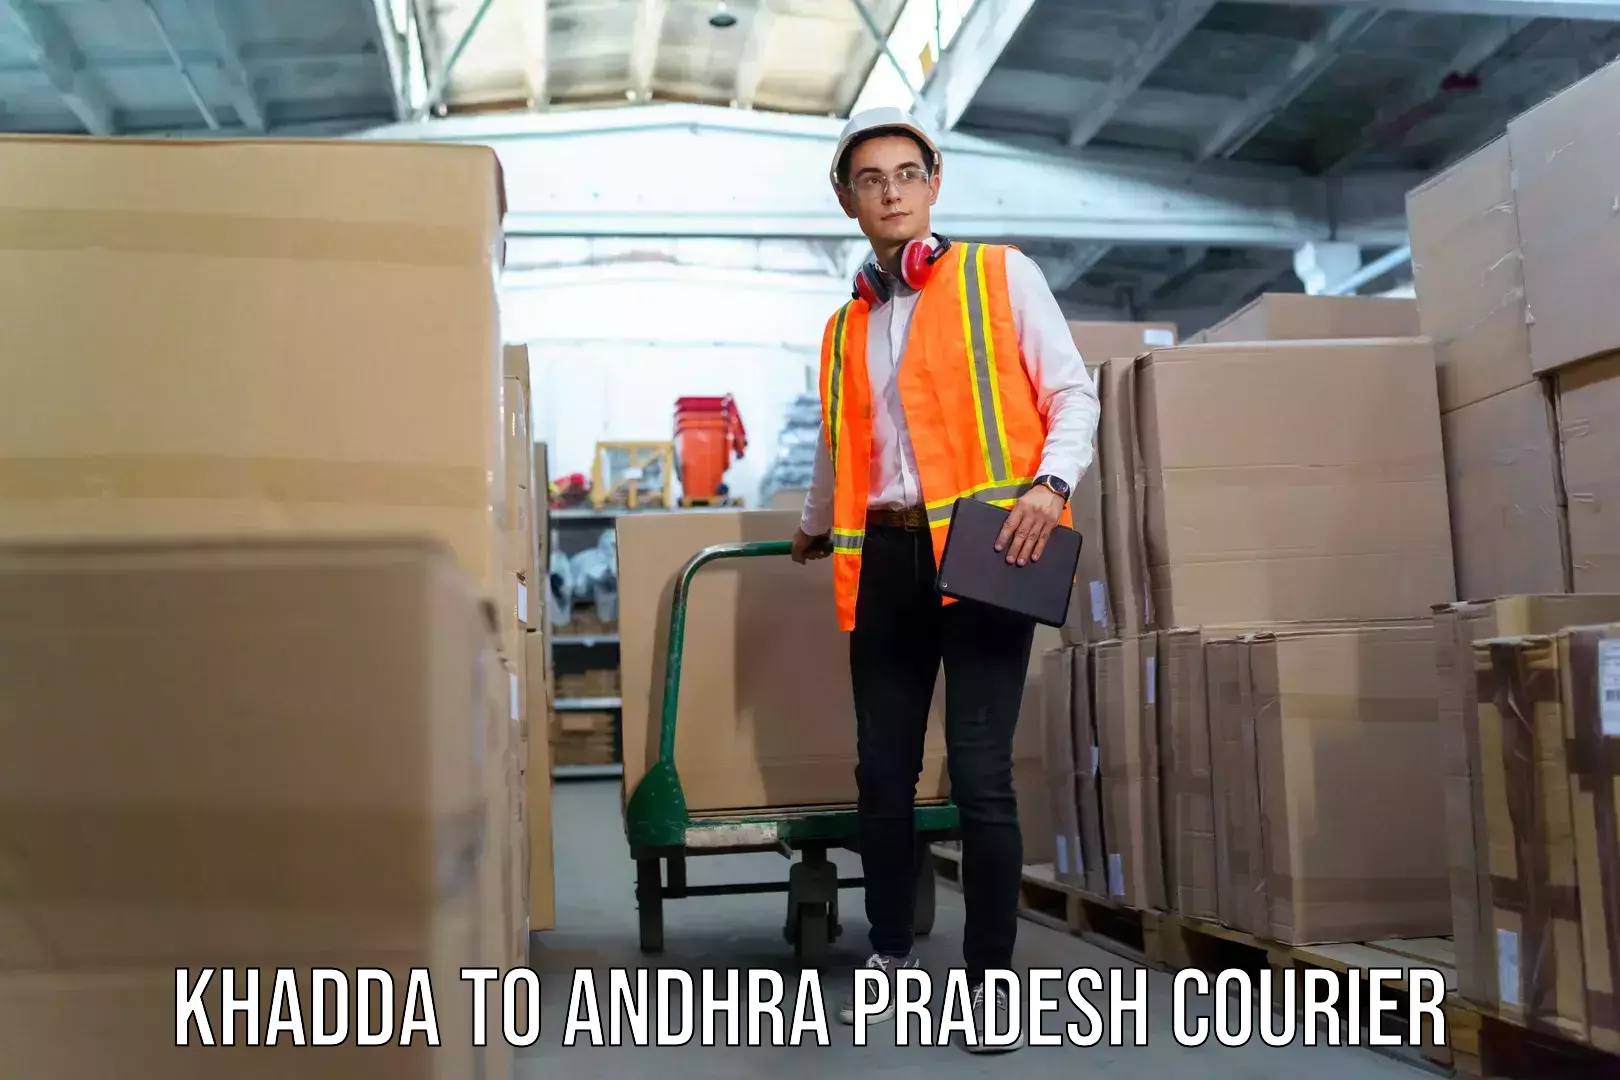 Baggage transport technology Khadda to Andhra Pradesh